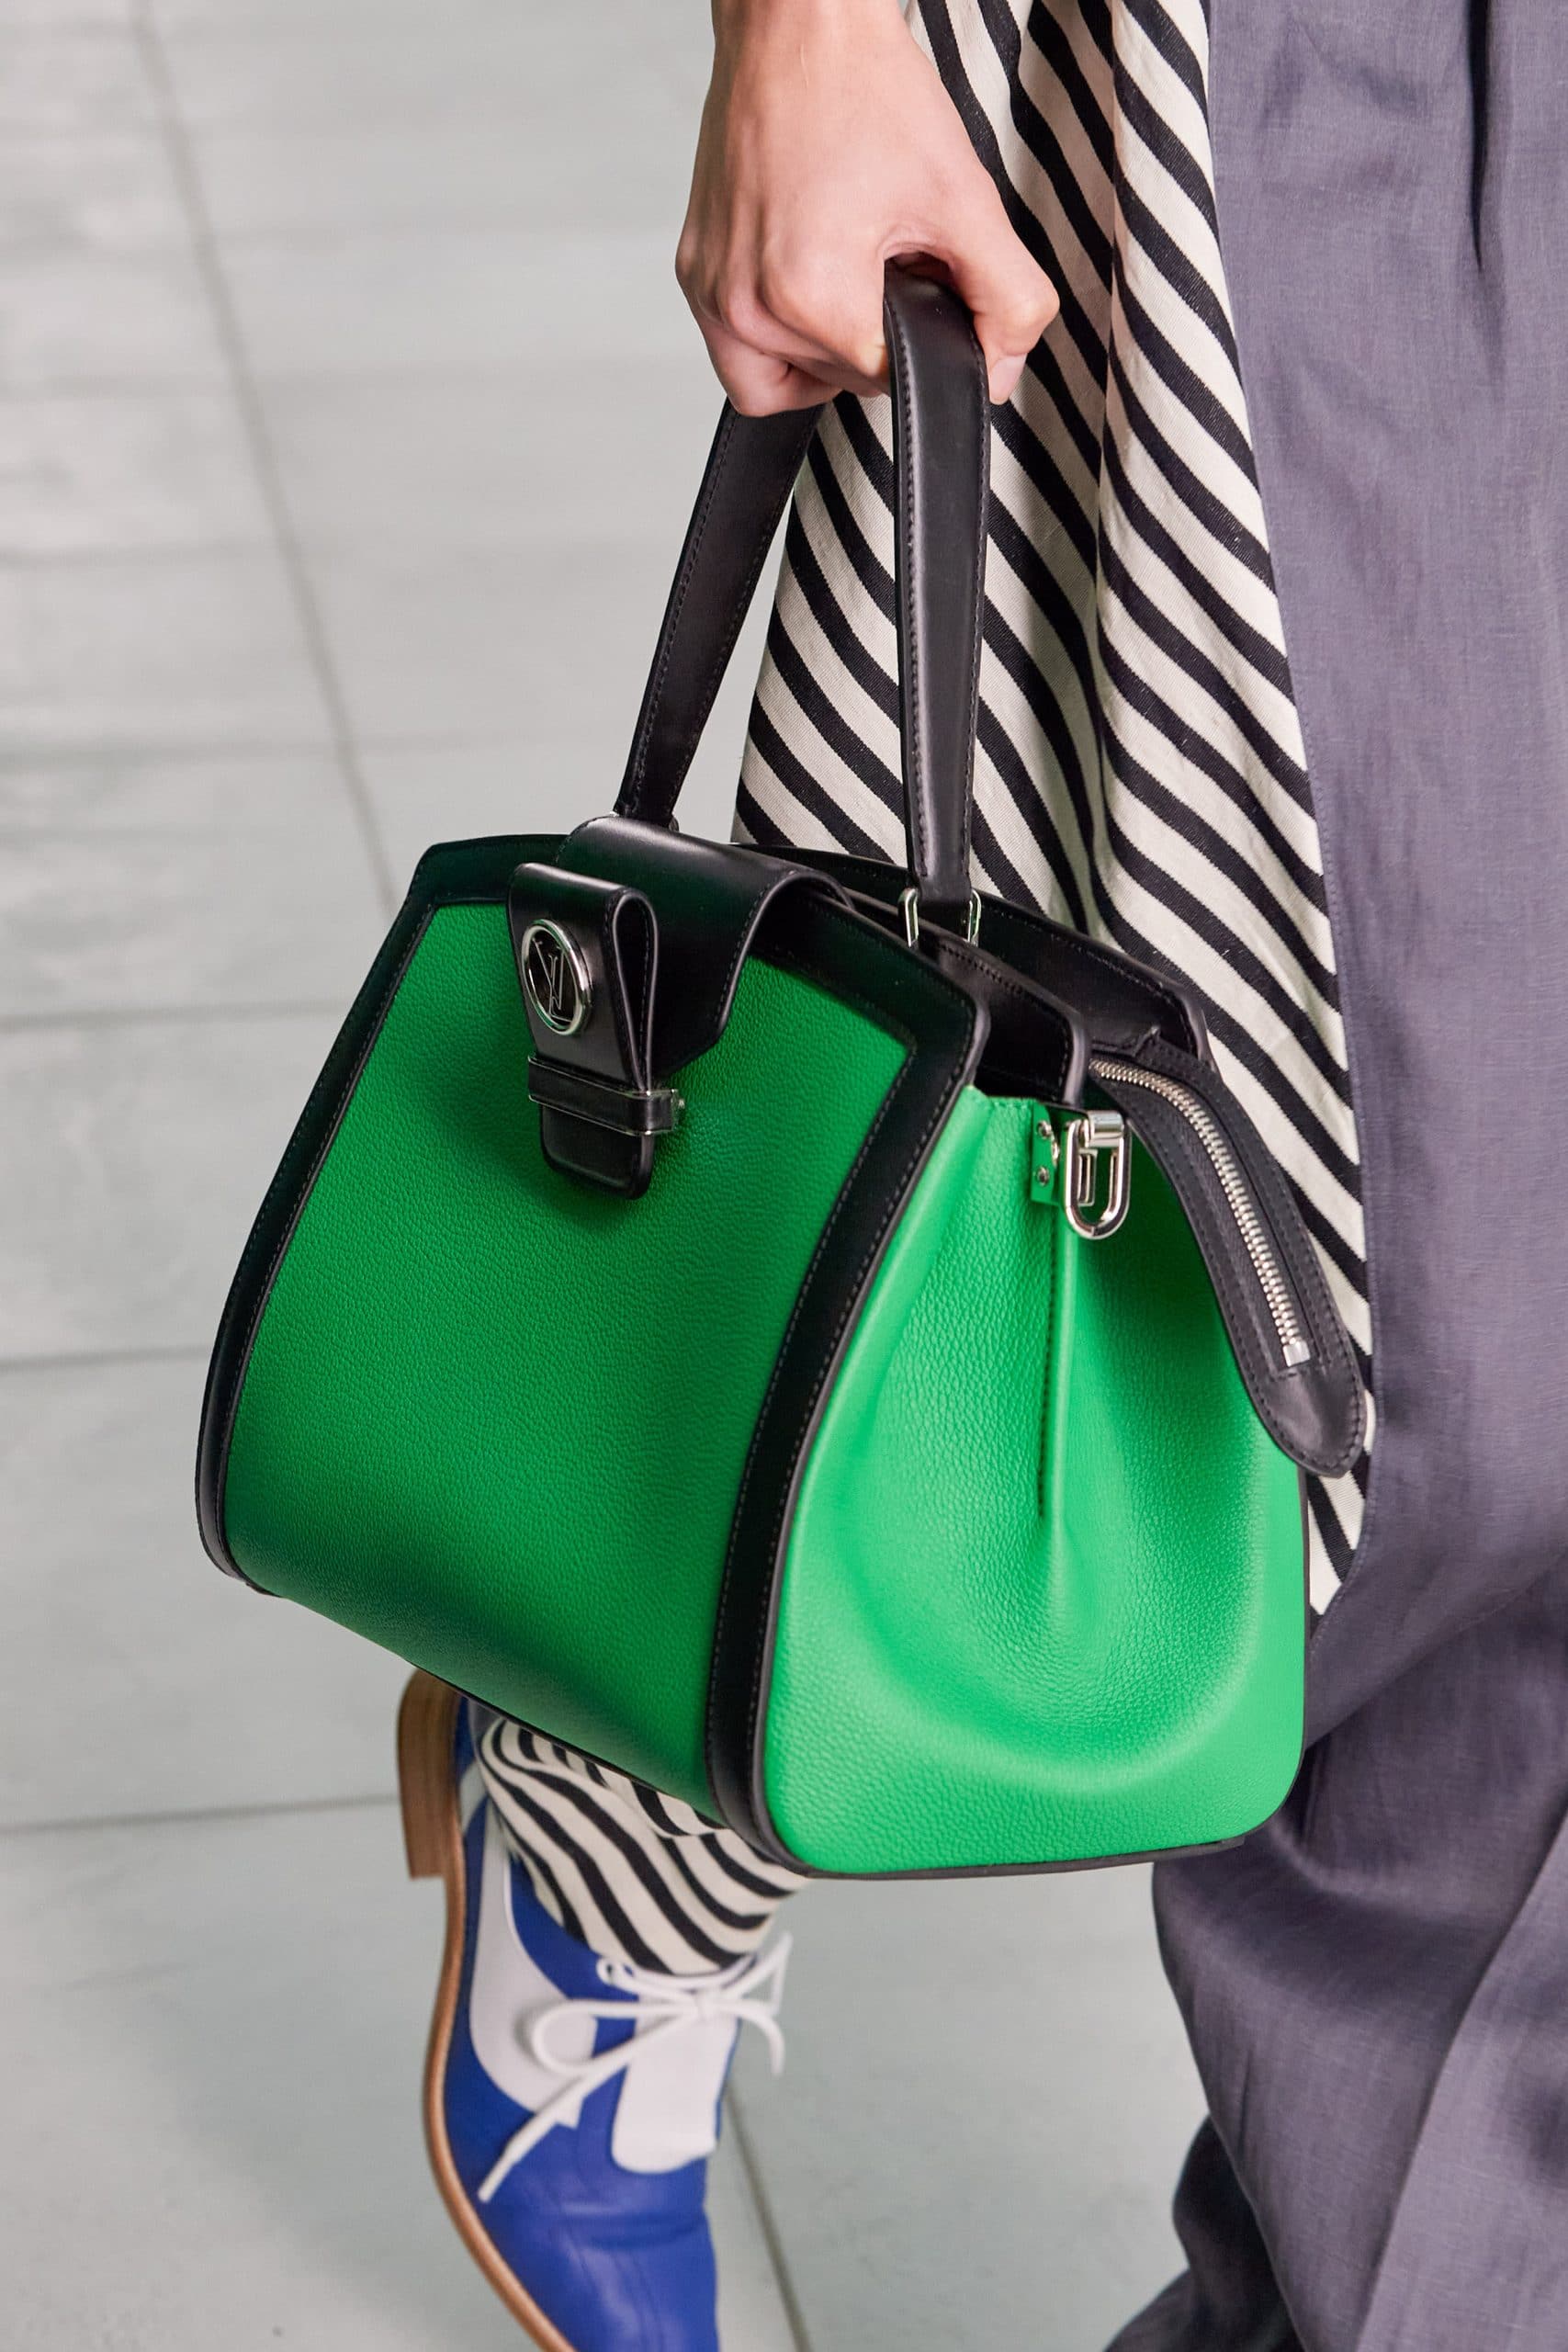 Louis Vuitton Fall 2021 Bags For Women's